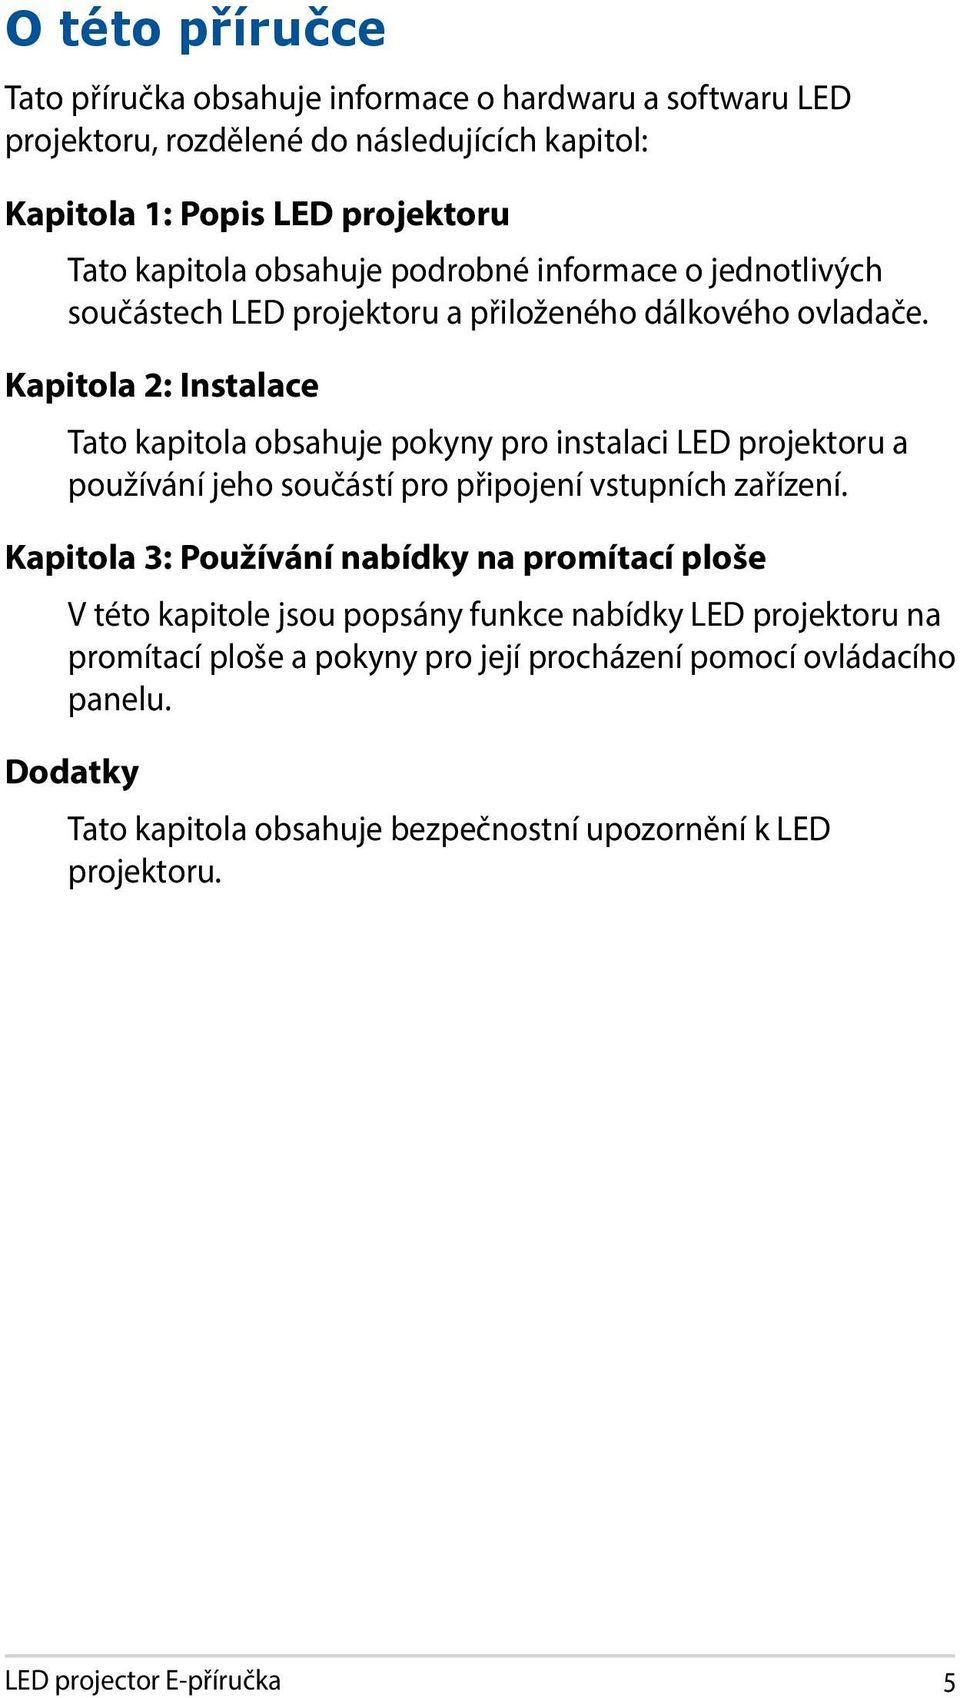 Kapitola 2: Instalace Tato kapitola obsahuje pokyny pro instalaci LED projektoru a používání jeho součástí pro připojení vstupních zařízení.